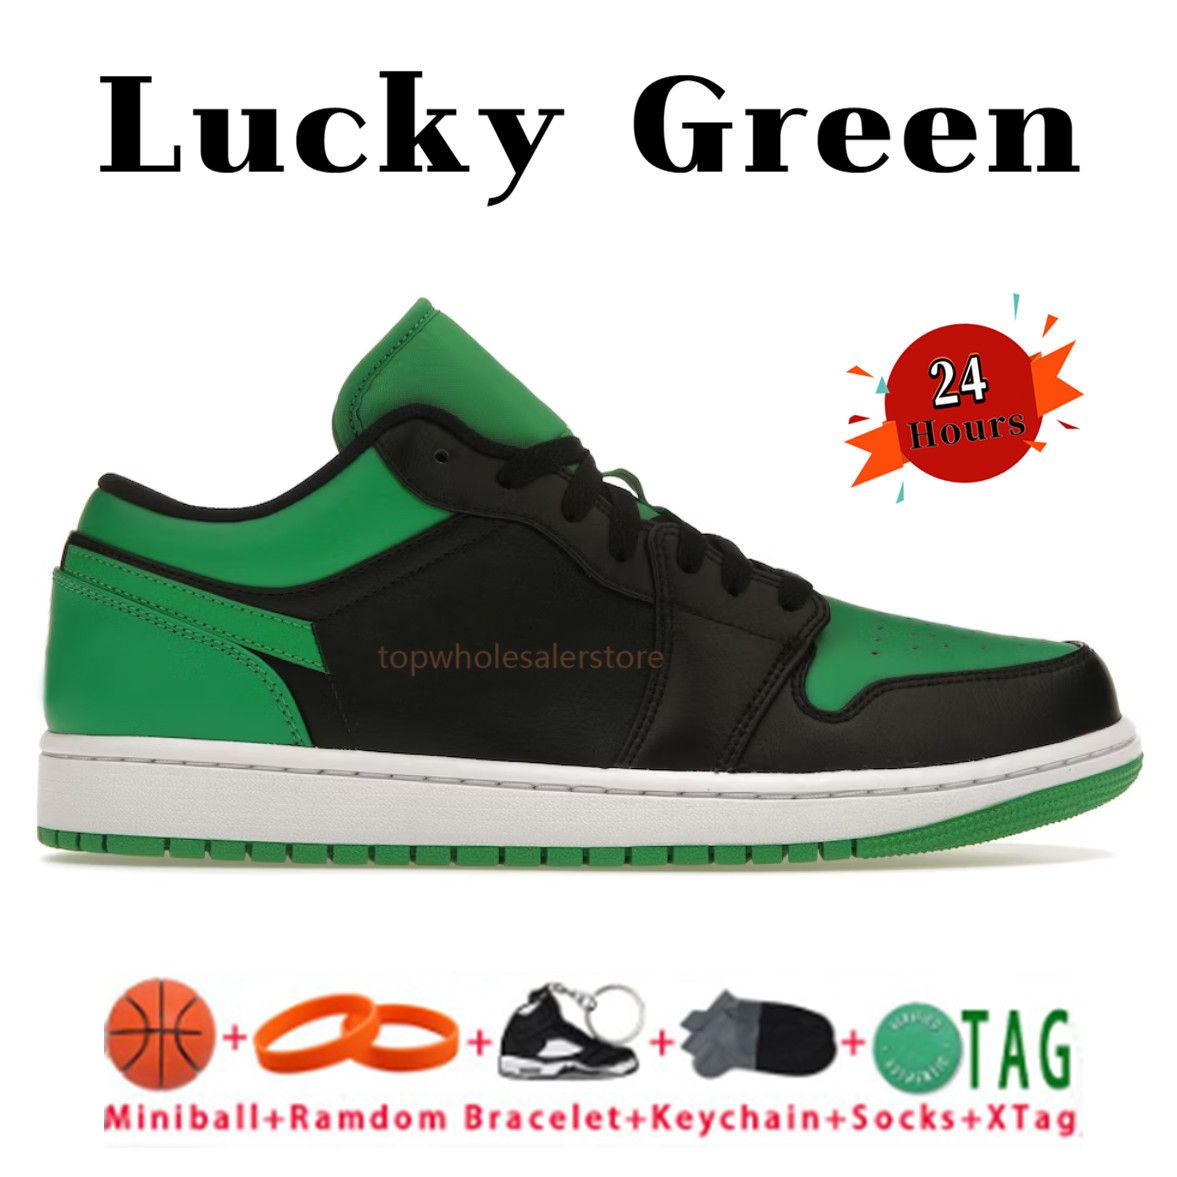 29. Lucky Green